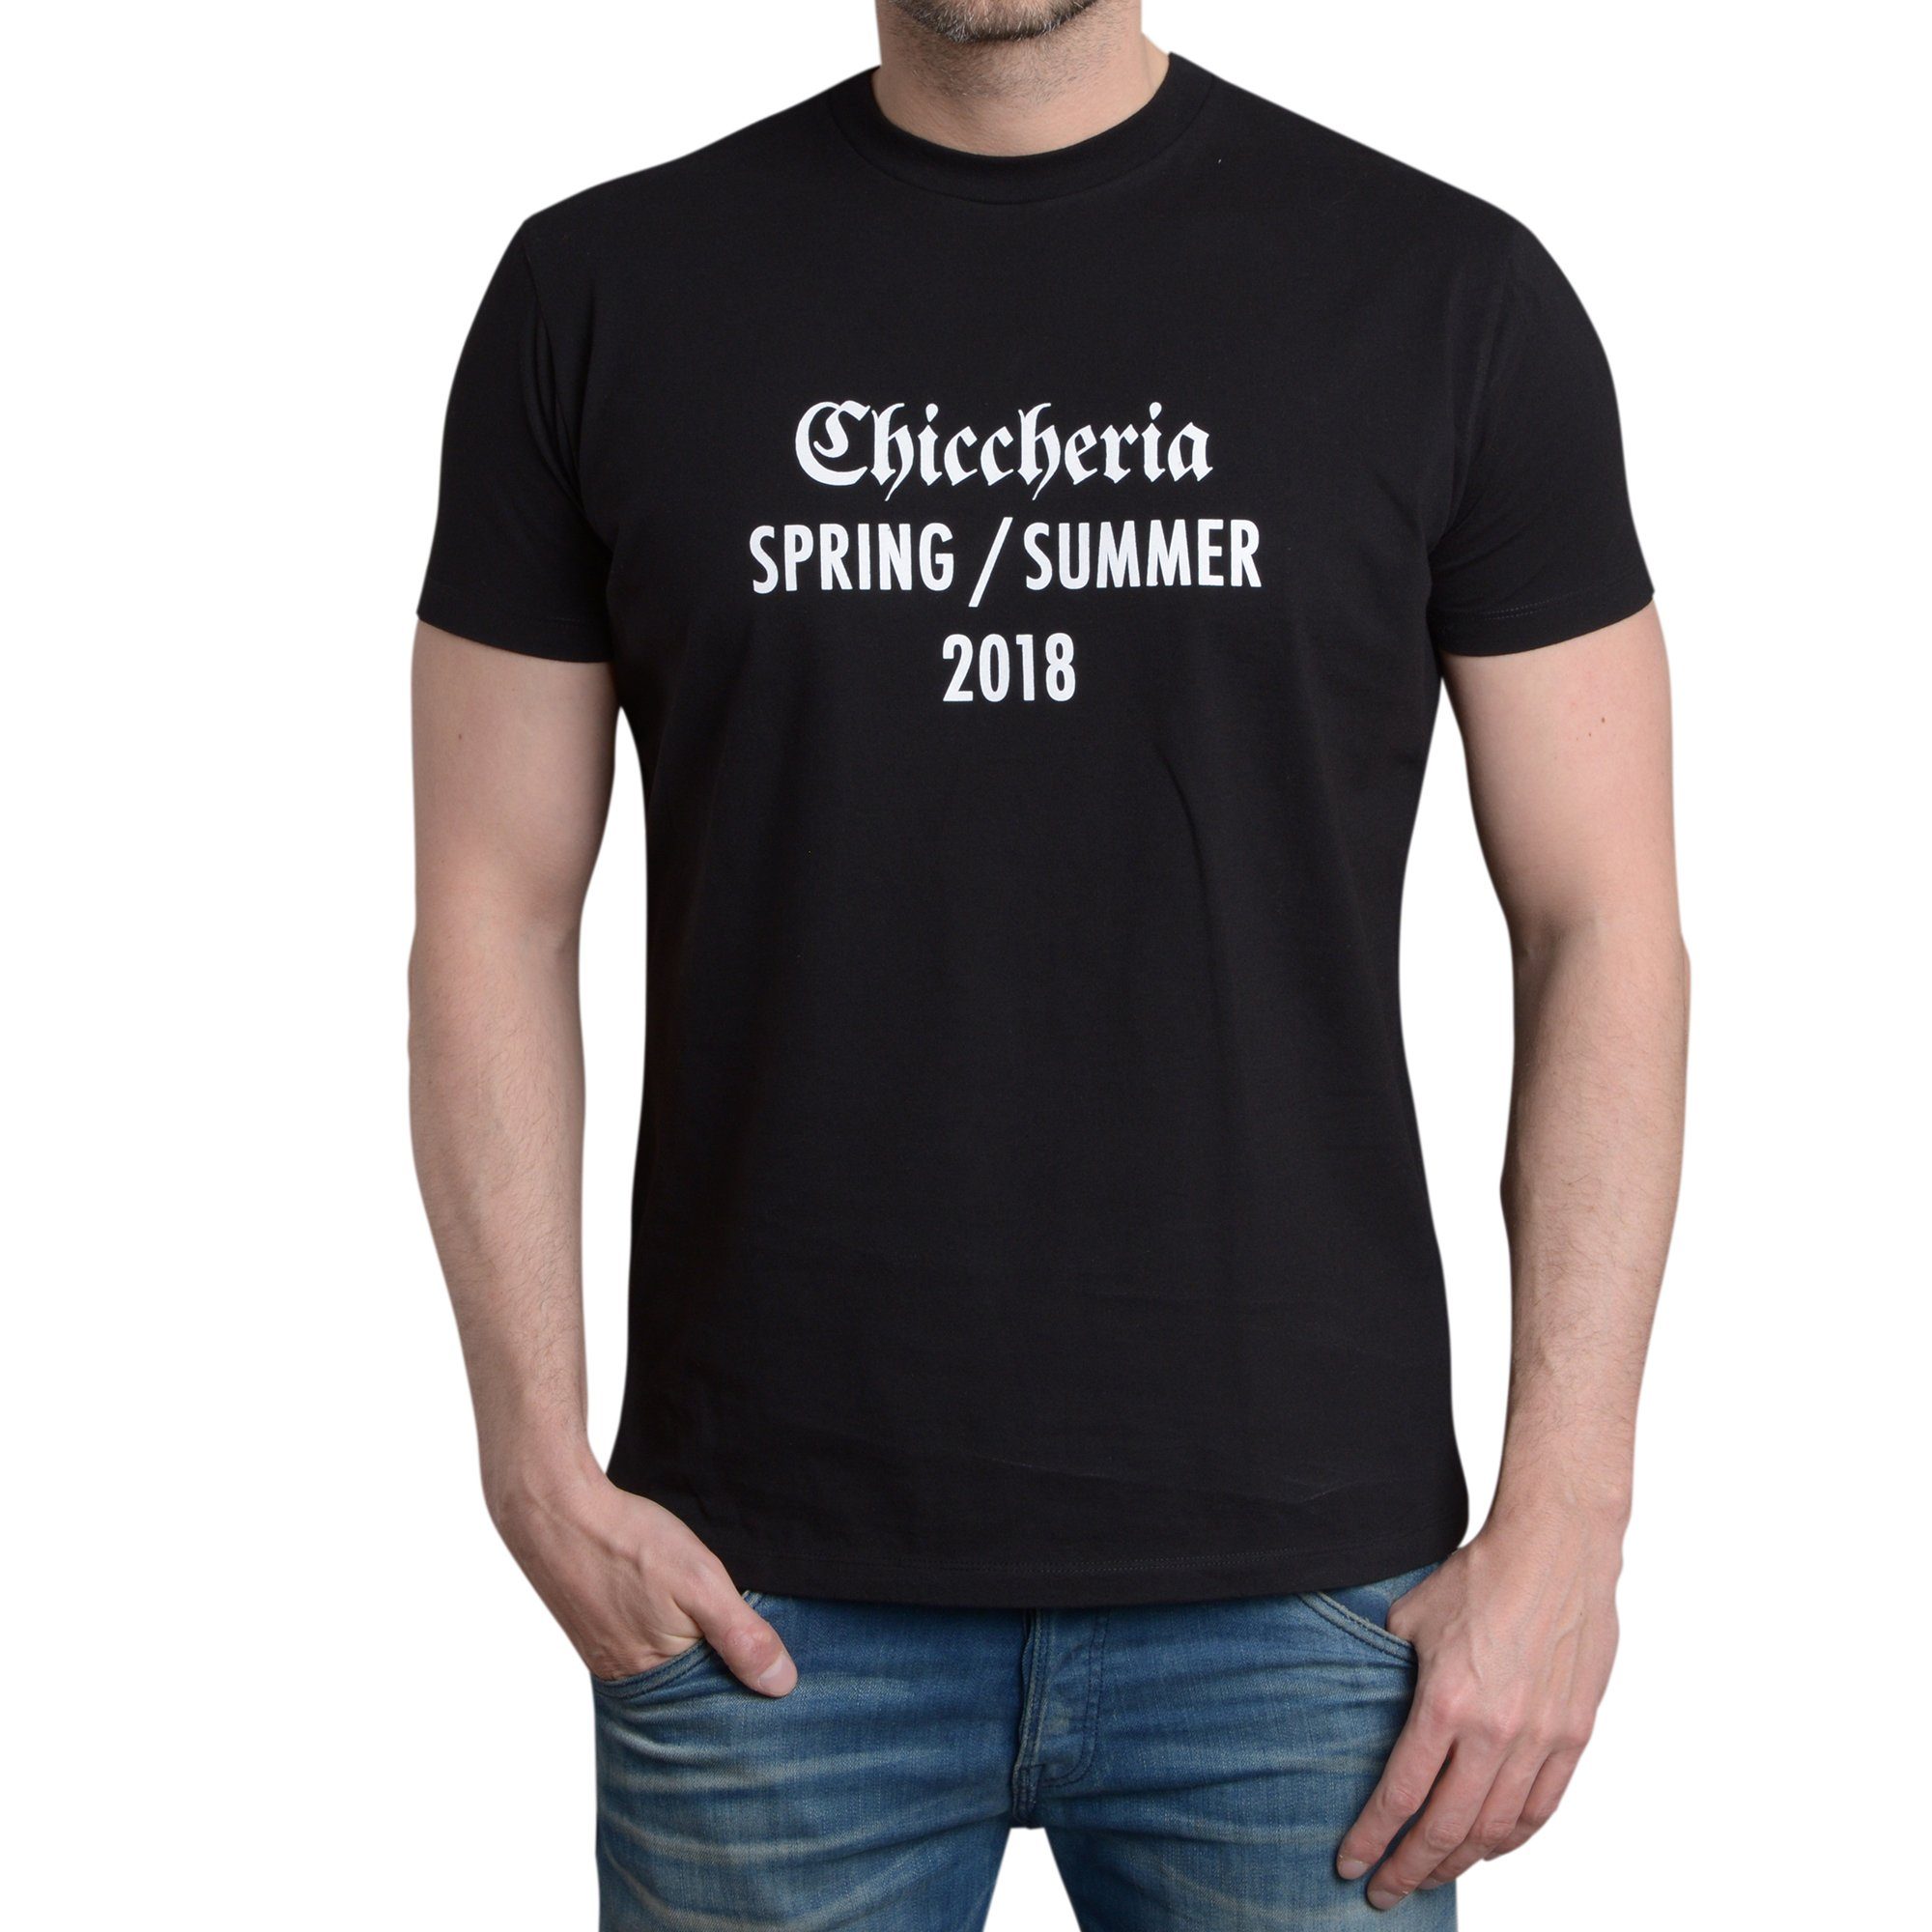 Chiccheria Brand / Summer 2018 T-Shirt Schwarz Spring